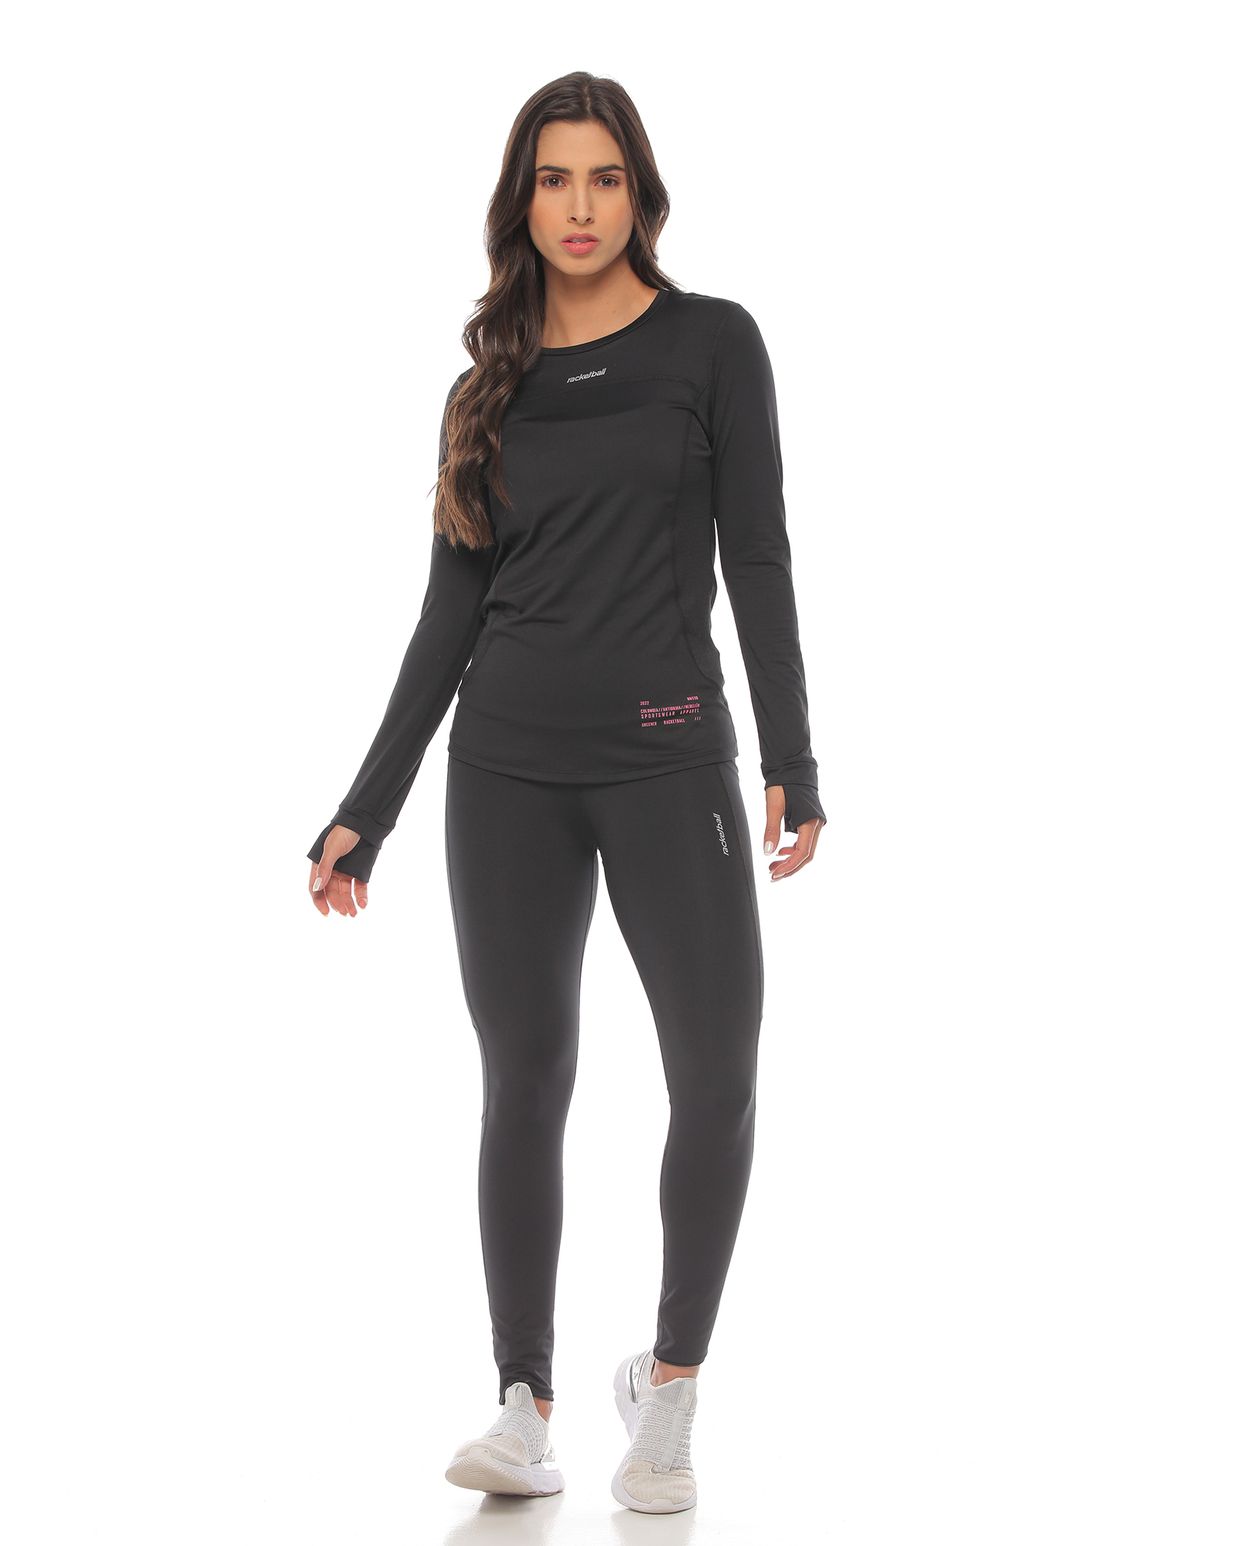 modelo con licra larga deportiva y camibuzo deportivo color negro para mujer cuerpo completo